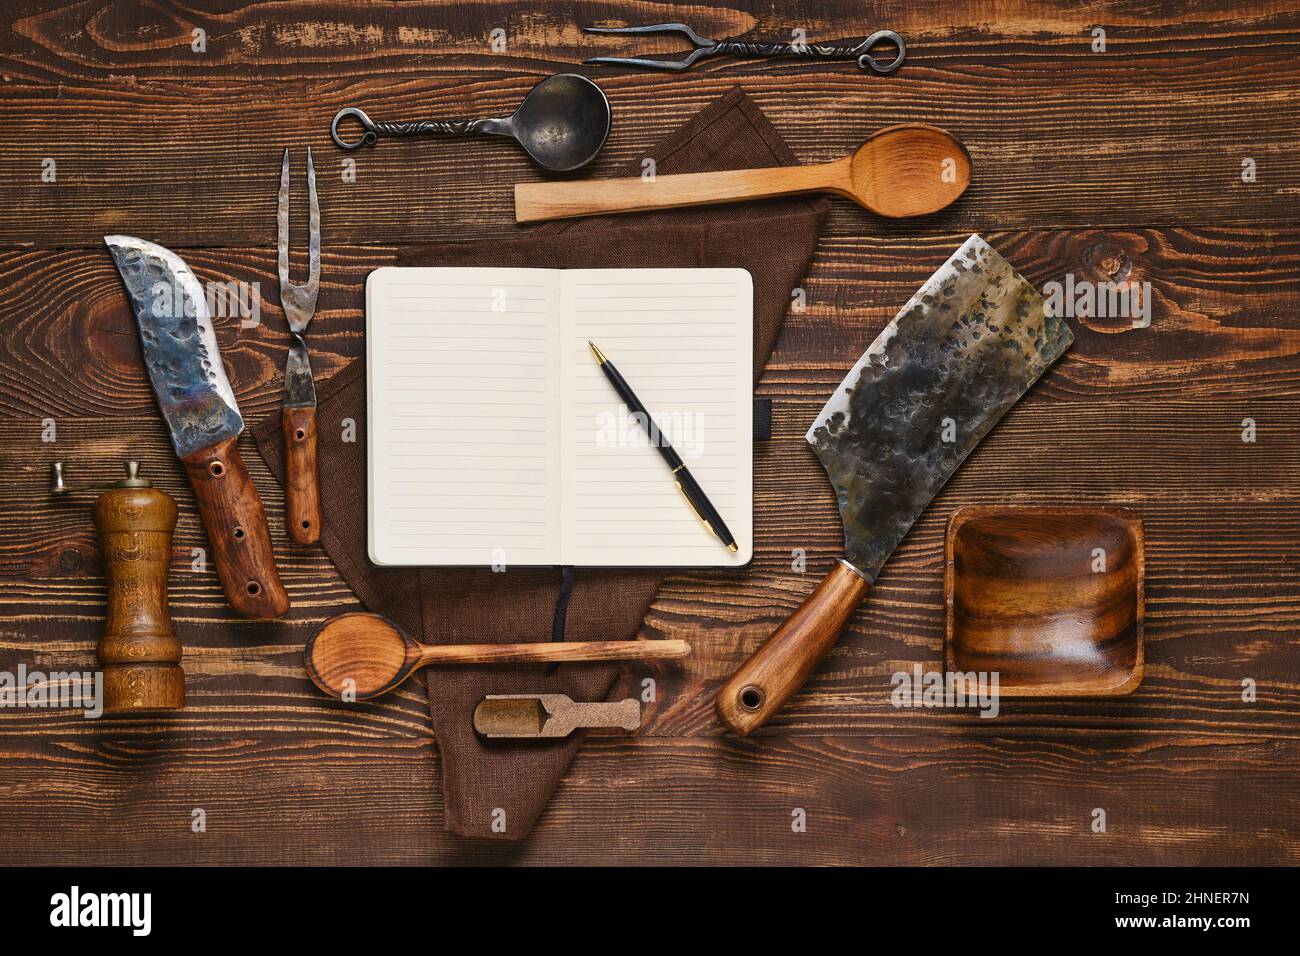 Draufsicht auf Vintage-Steakgabel, Messer und Beil auf Holztisch neben Notizbuch. Grillgeräte und offenen Notizblock, Food Blogging und Menü conce Stockfoto